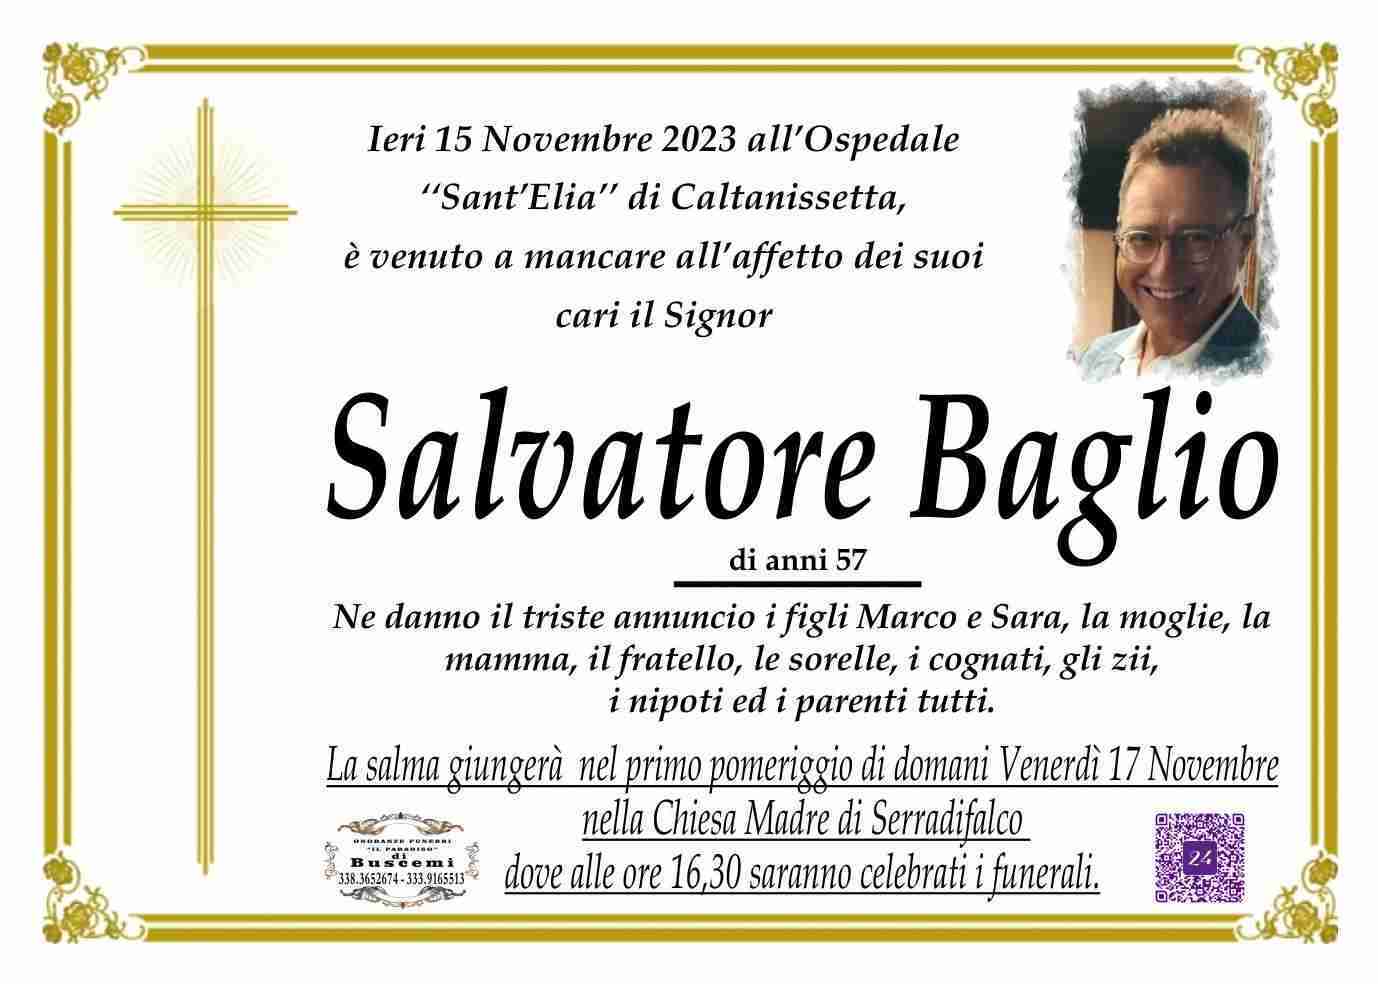 Salvatore Baglio